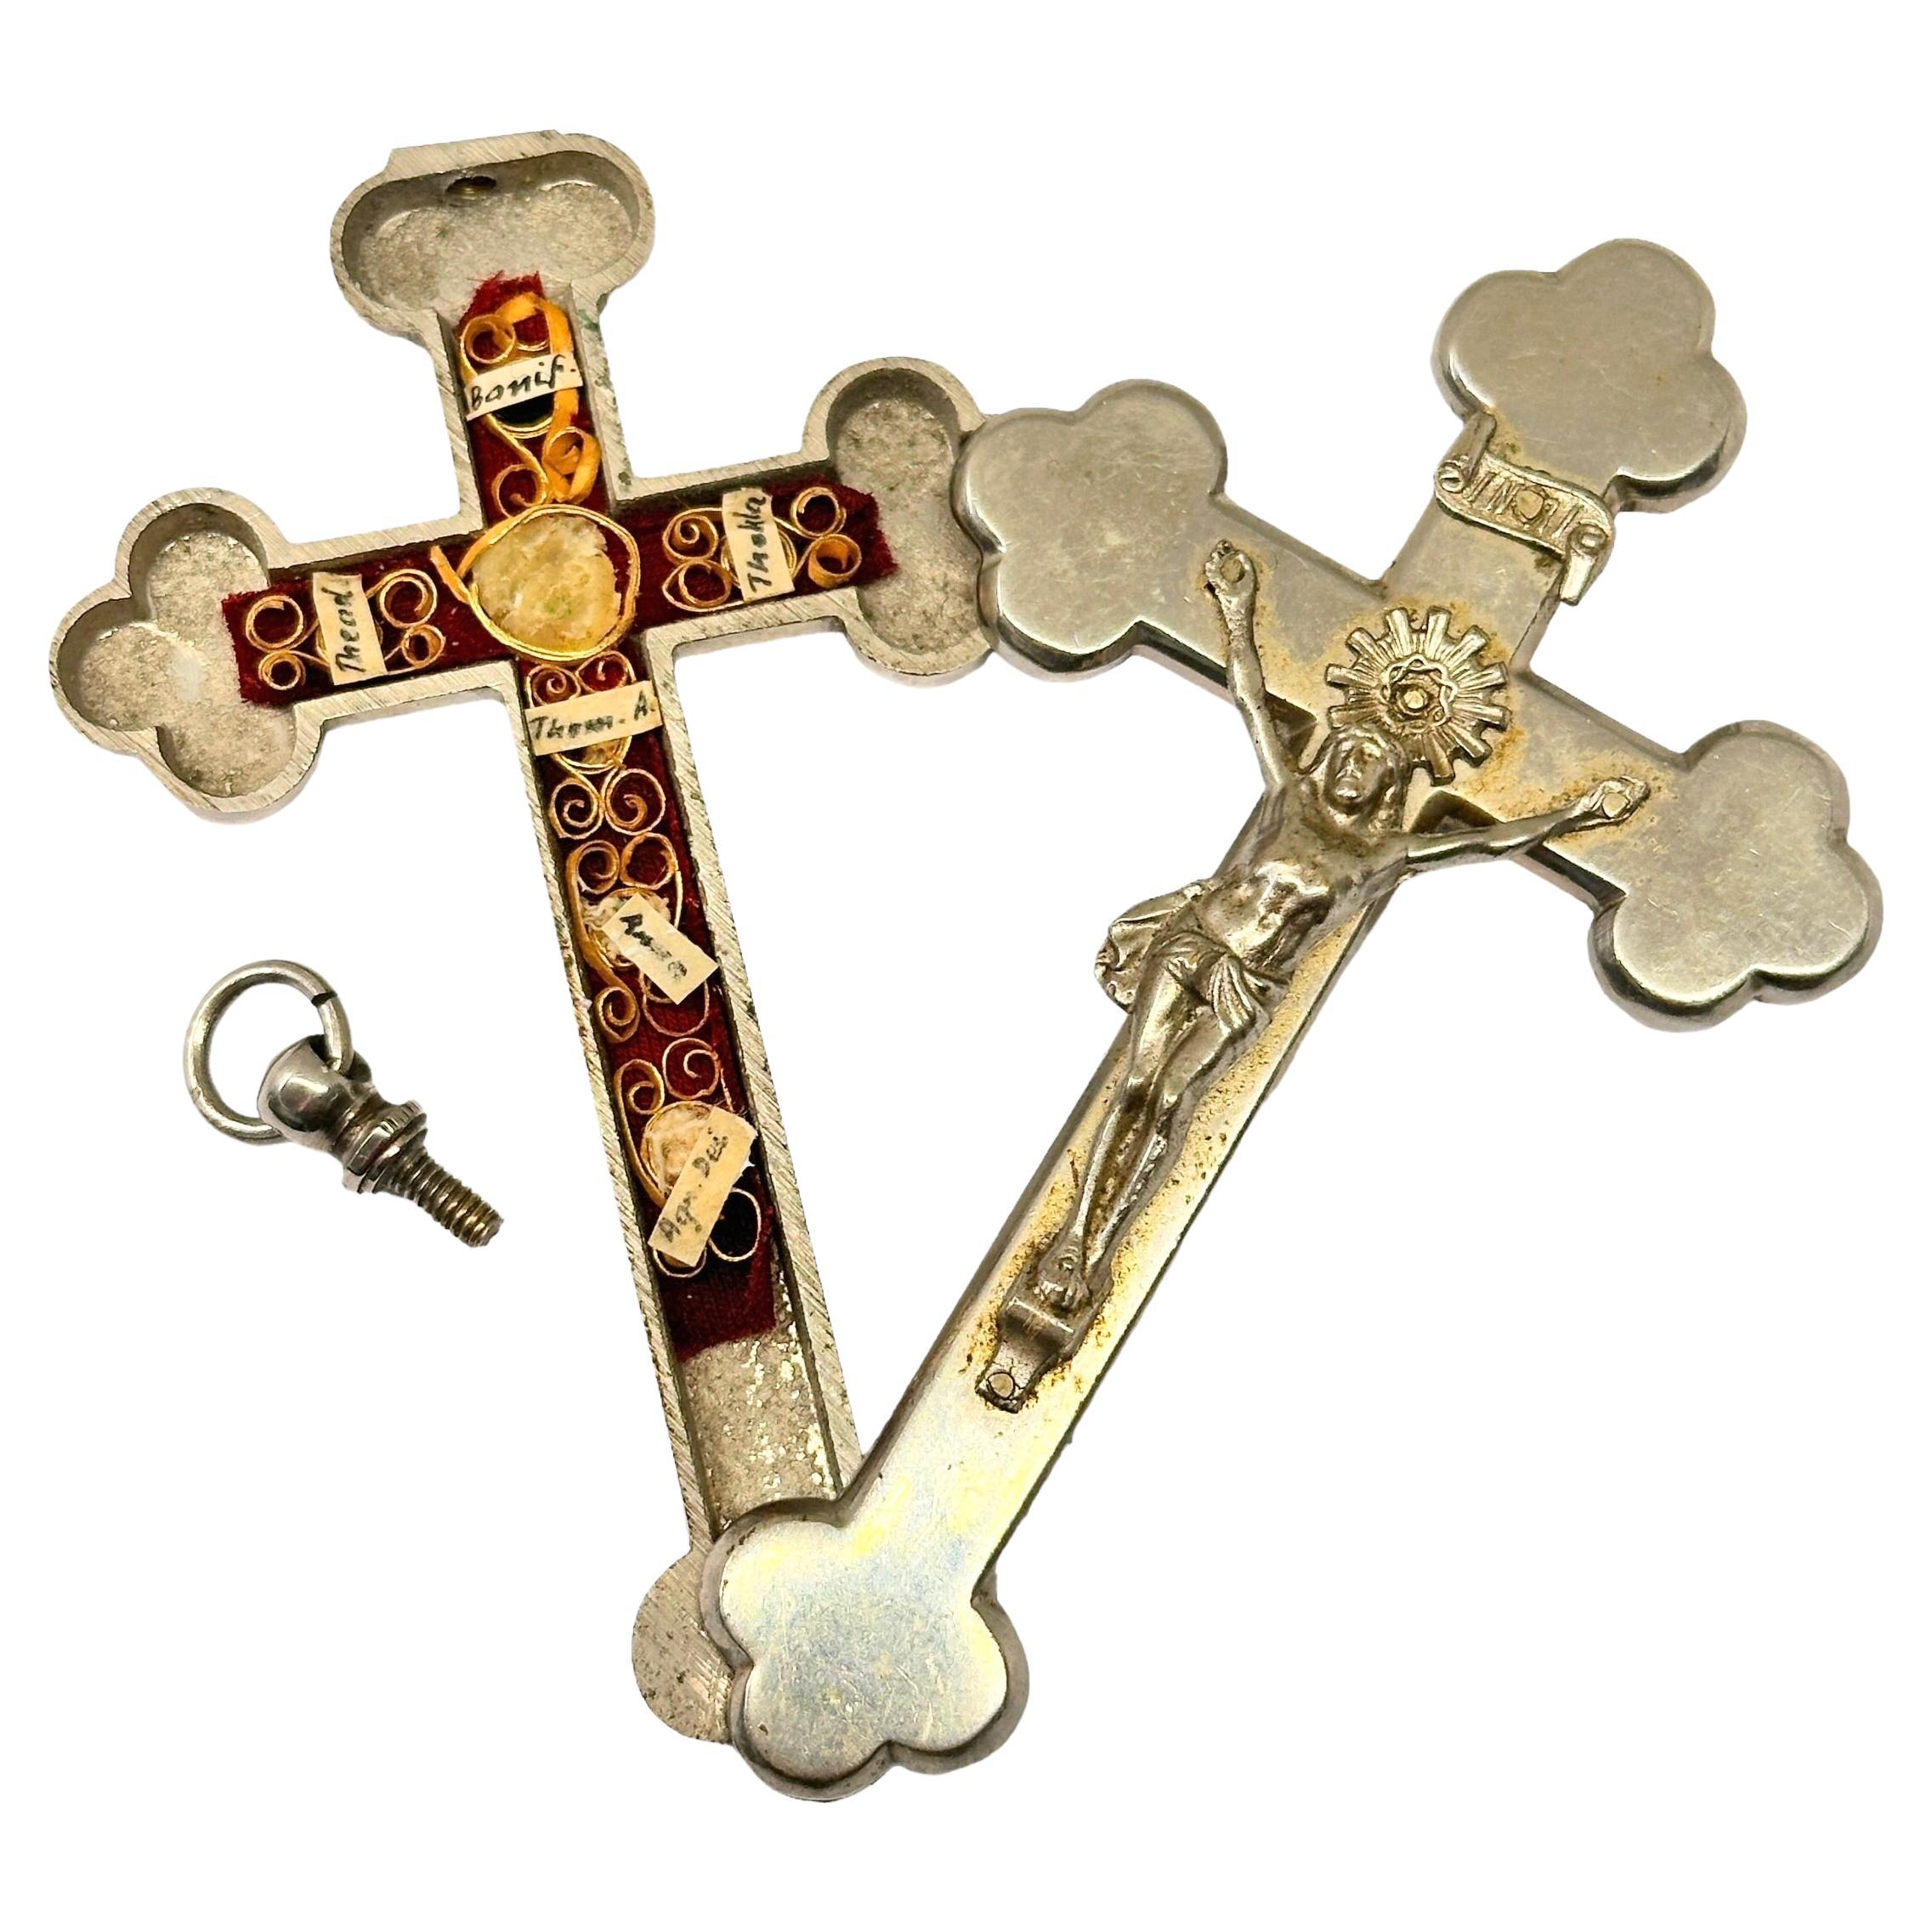 Großer antiker katholischer Reliquary-Kasten-Kreuzfix-Anhänger mit sechs Kristallreliefs von Heiligen